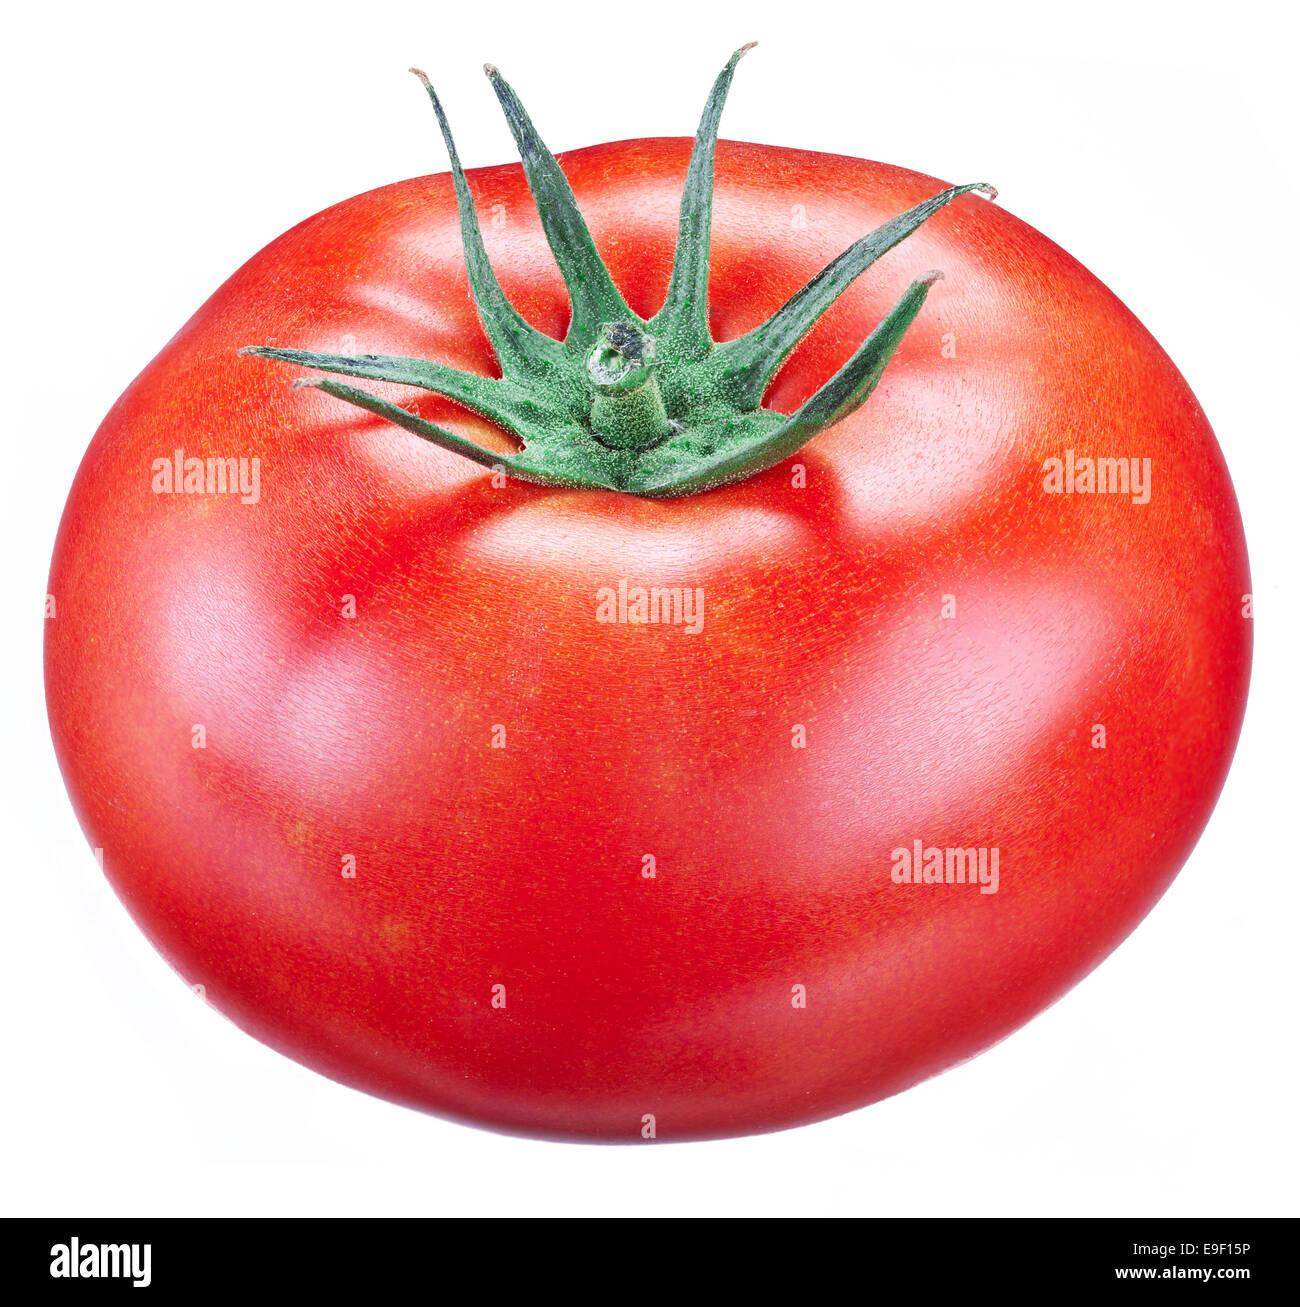 Tomaten auf einem weißen Hintergrund. Datei enthält Beschneidungspfade. Stockfoto